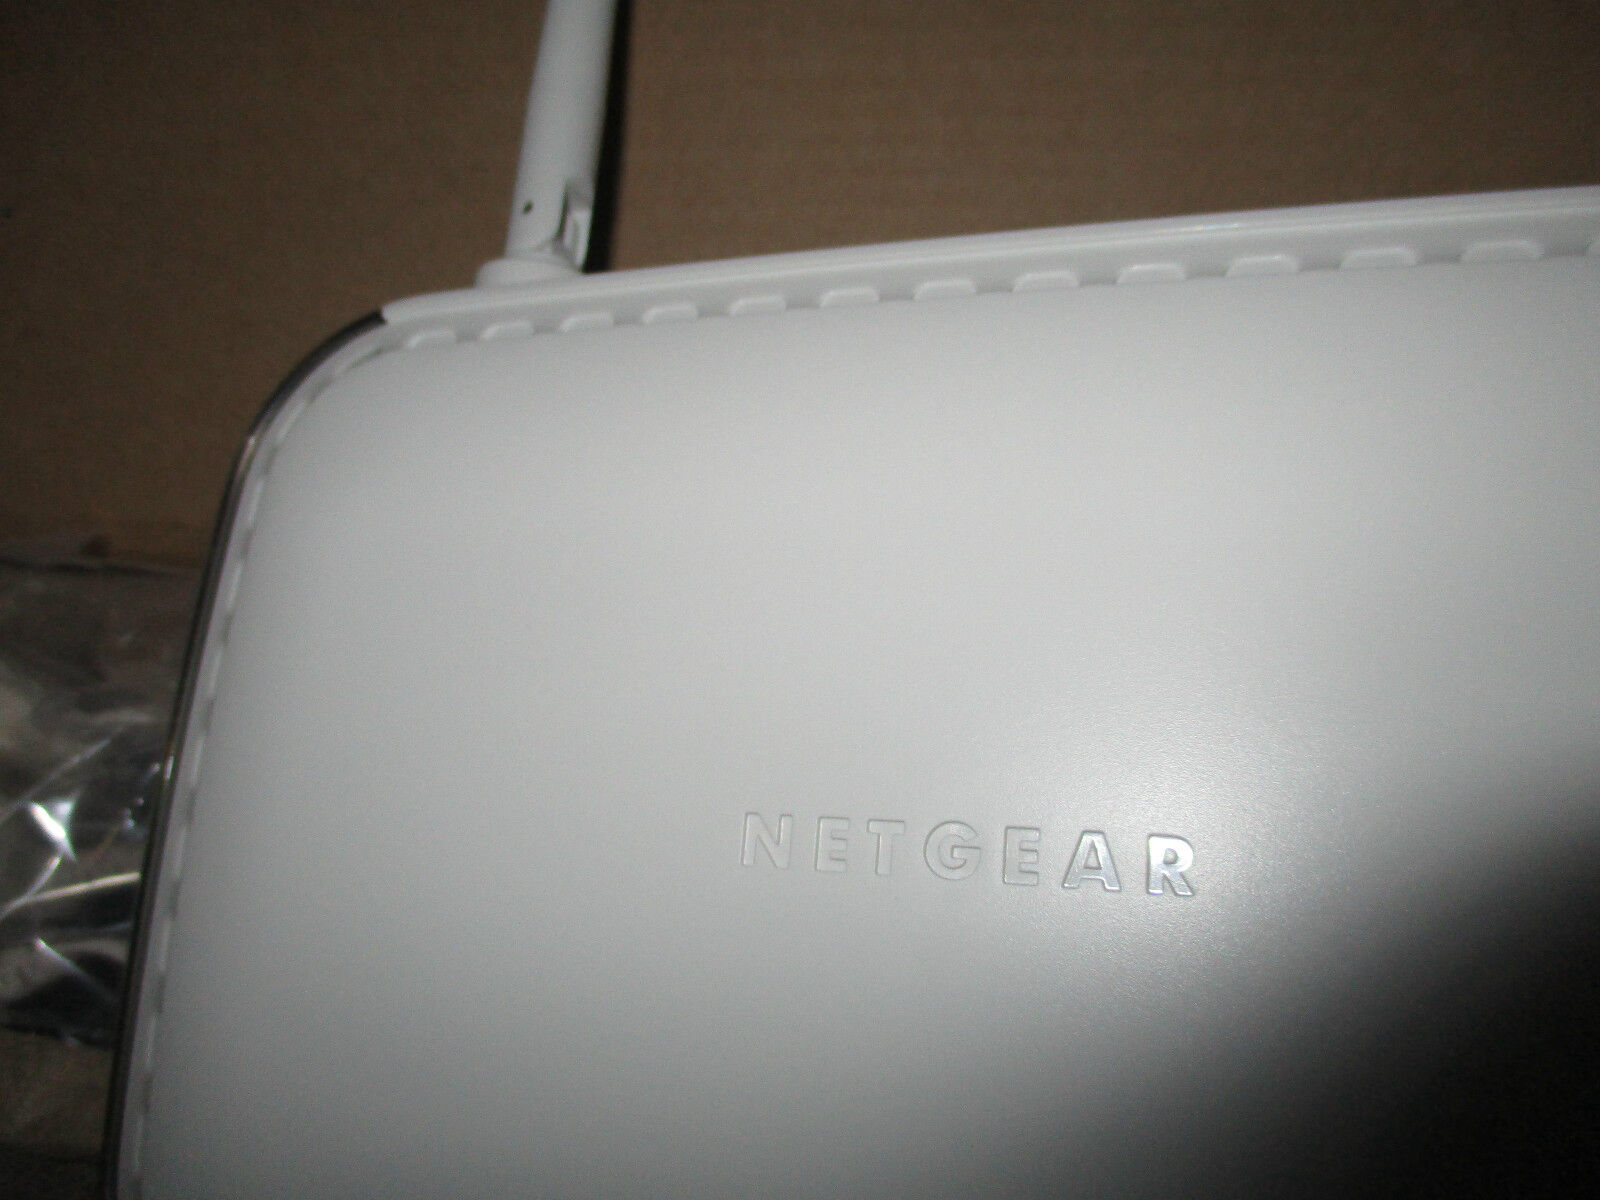 Netgear 54 Mbps Wireless ADSL+ Modem Router DG834G V4